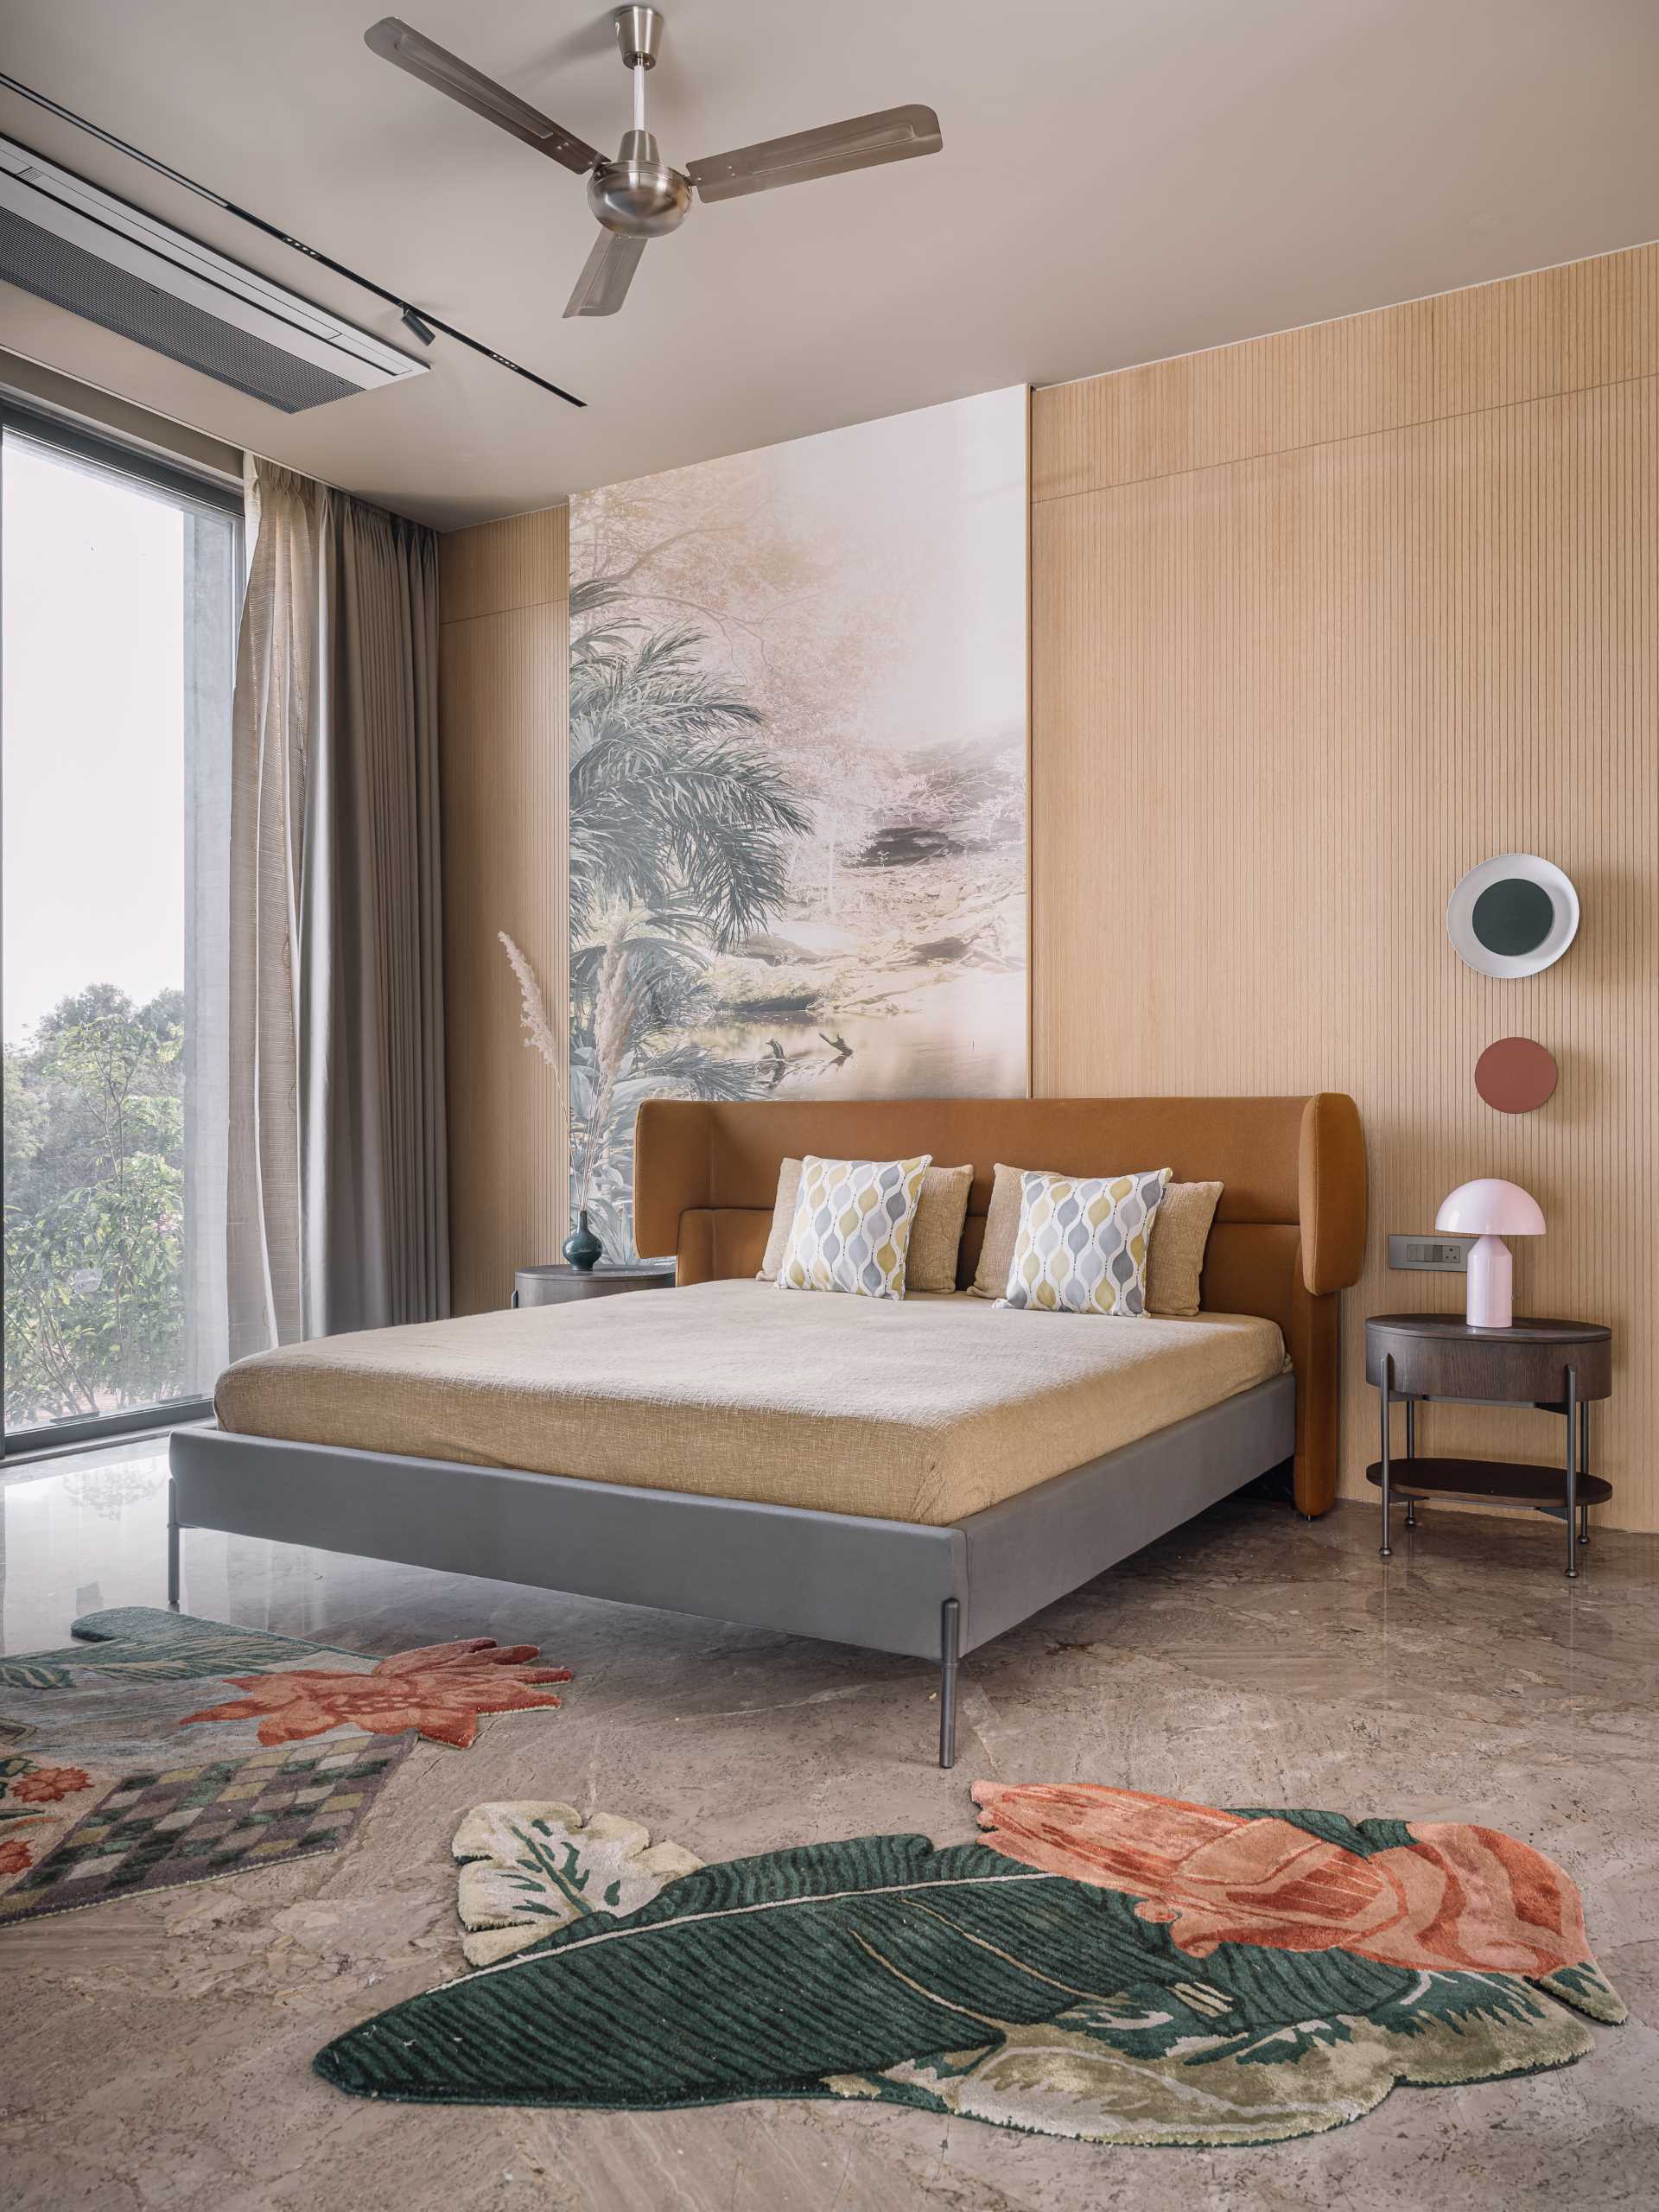 Un dormitor modern cu tavan înalt și lucrări de artă.